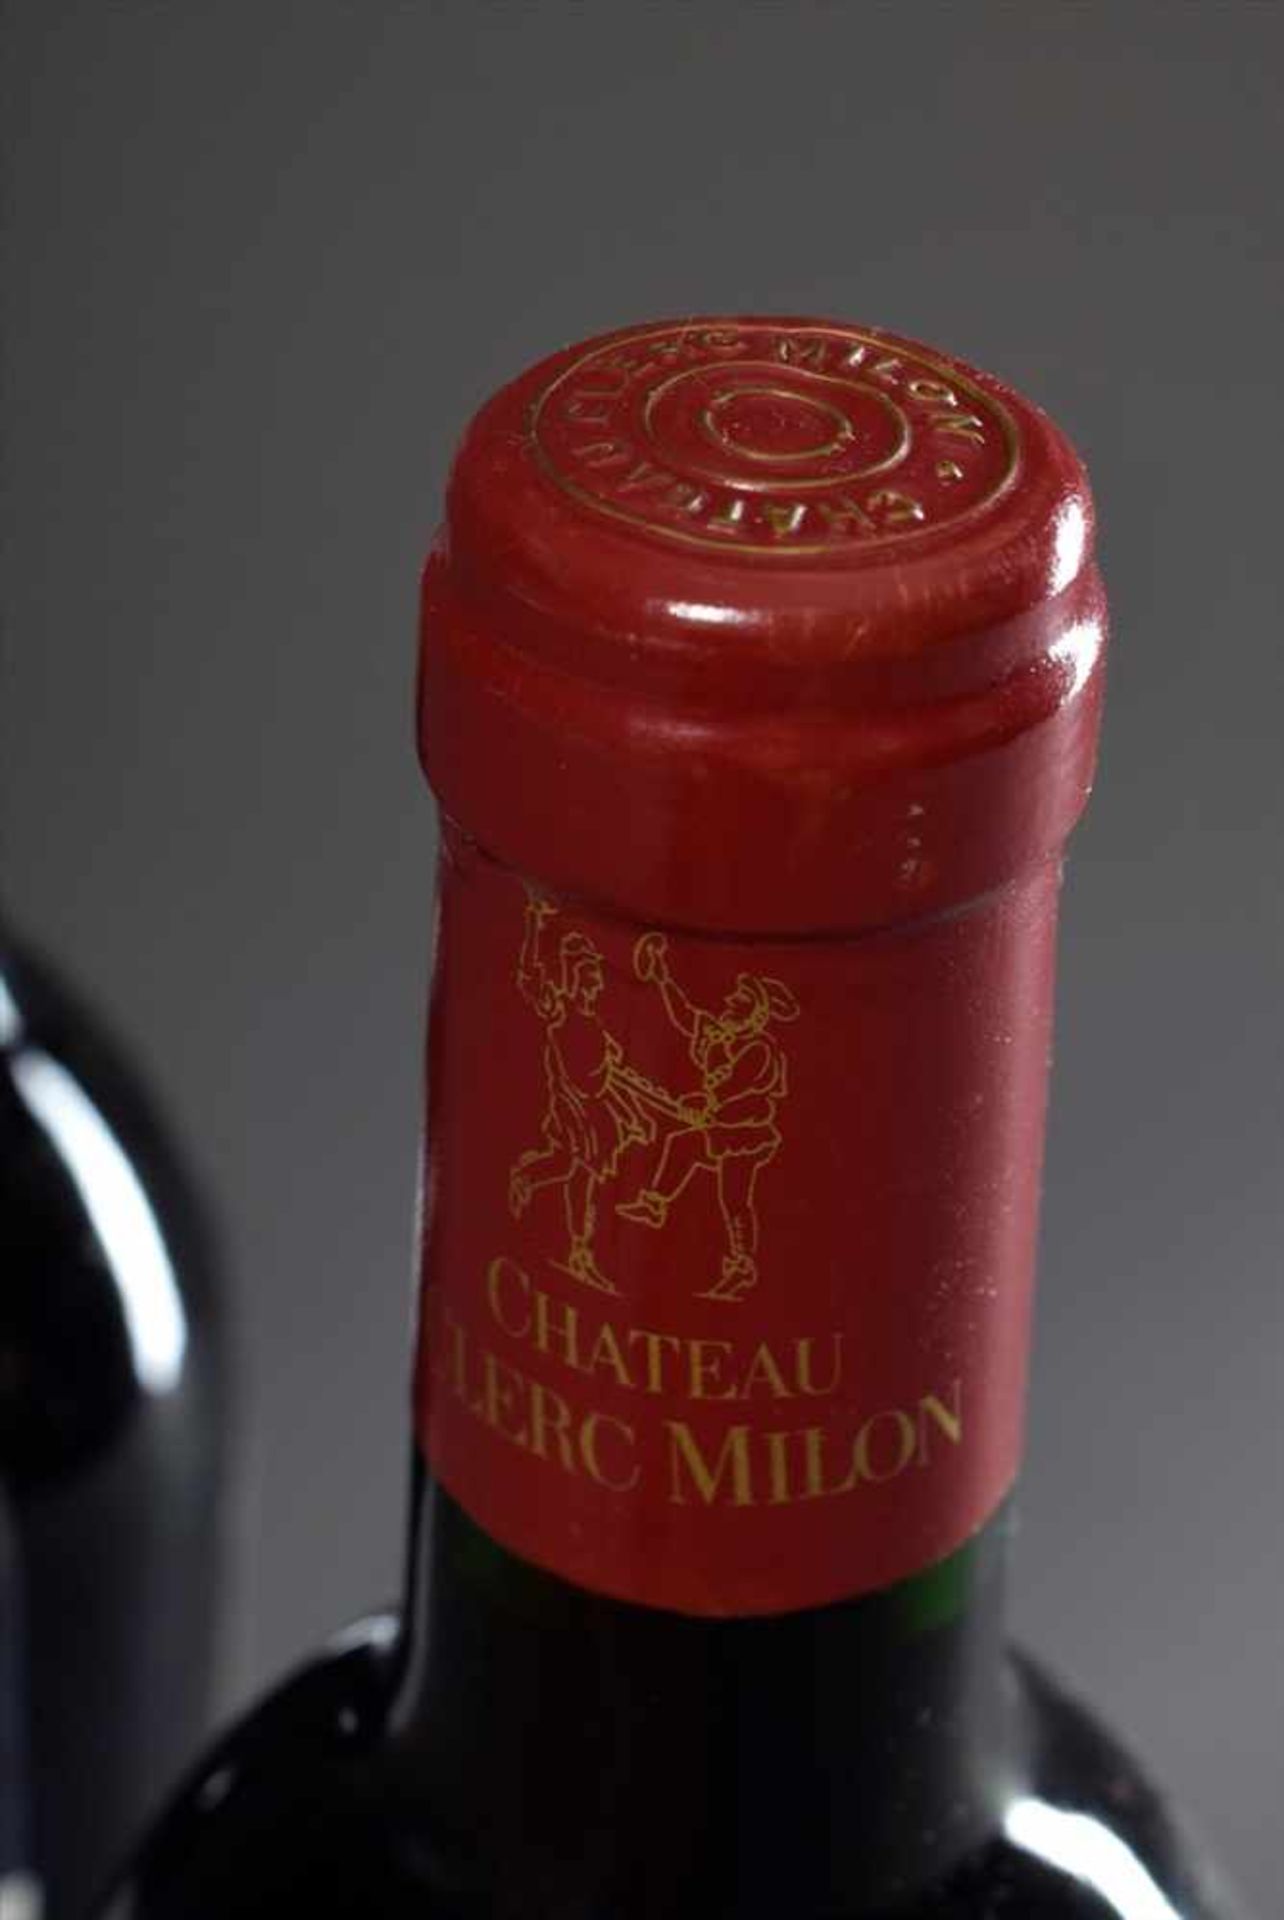 2 Flaschen Rotwein "Chateau Clerc Milon Rothschild", 1992, Schlossabfüllung, guter Füllstand, - Image 3 of 3